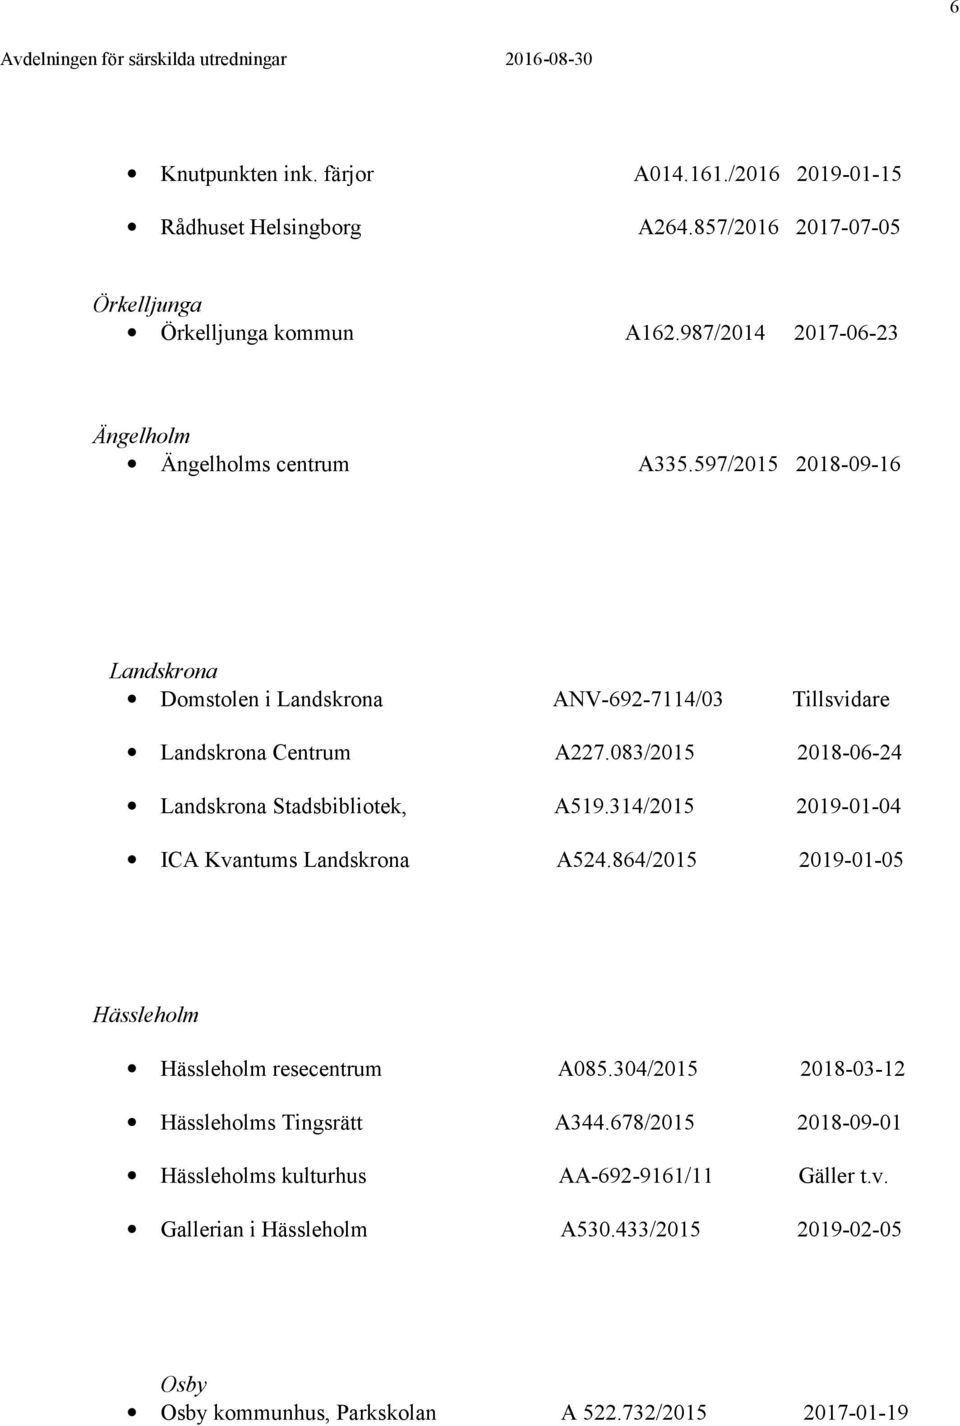 083/2015 2018-06-24 Landskrona Stadsbibliotek, A519.314/2015 2019-01-04 ICA Kvantums Landskrona A524.864/2015 2019-01-05 Hässleholm Hässleholm resecentrum A085.